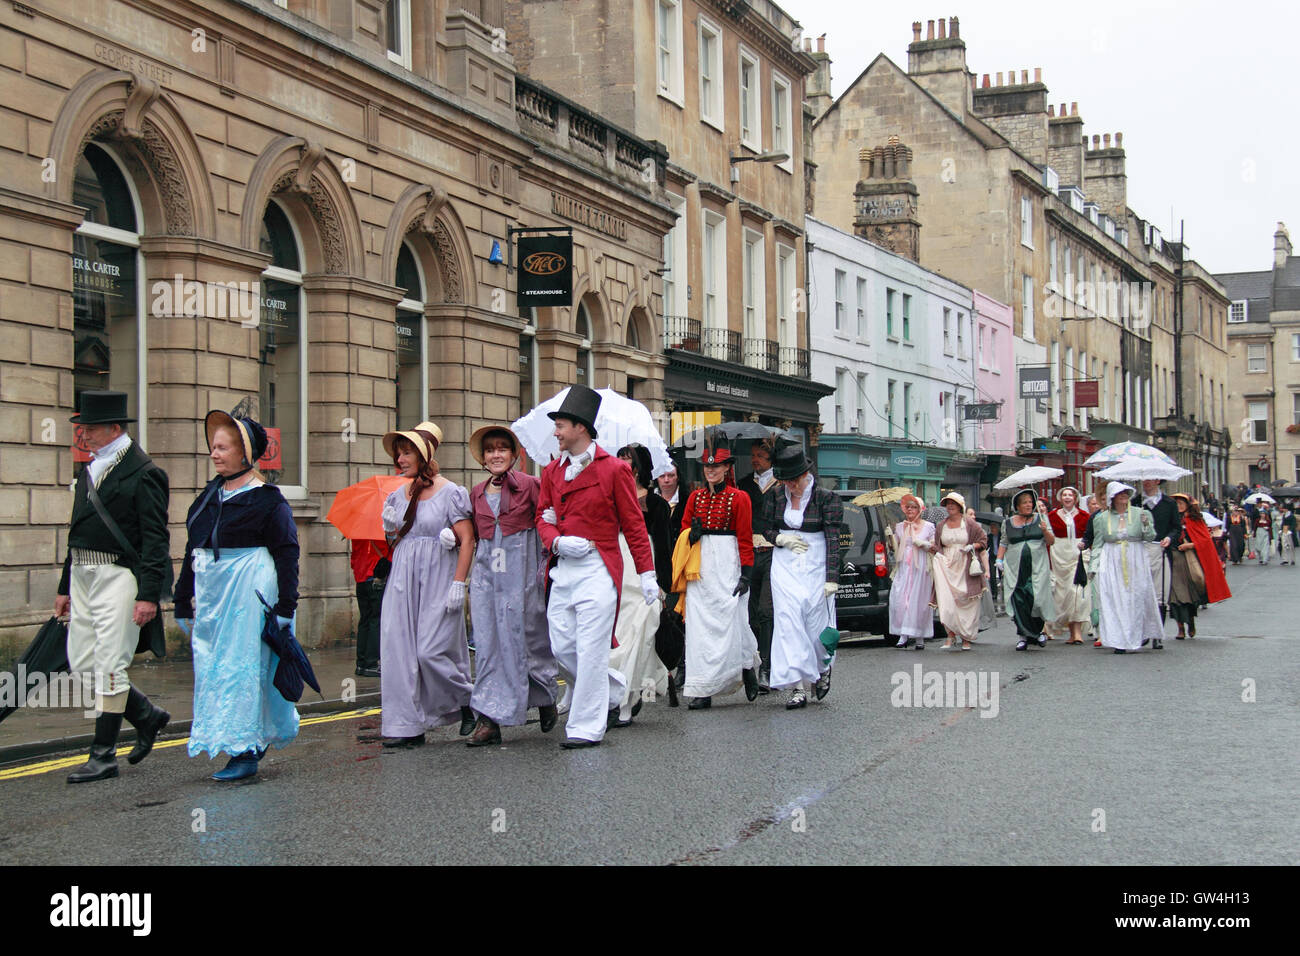 Festival de Jane Austen. 9th-18th September 2016. Bath, Somerset, Angleterre, Royaume-Uni. La pluie n'a pas réussi à refroidir l'enthousiasme des participants à la promenade en costume Grand Regency, samedi 10 septembre 2016. Crédit : Ian bouteille/Alamy Live News Banque D'Images